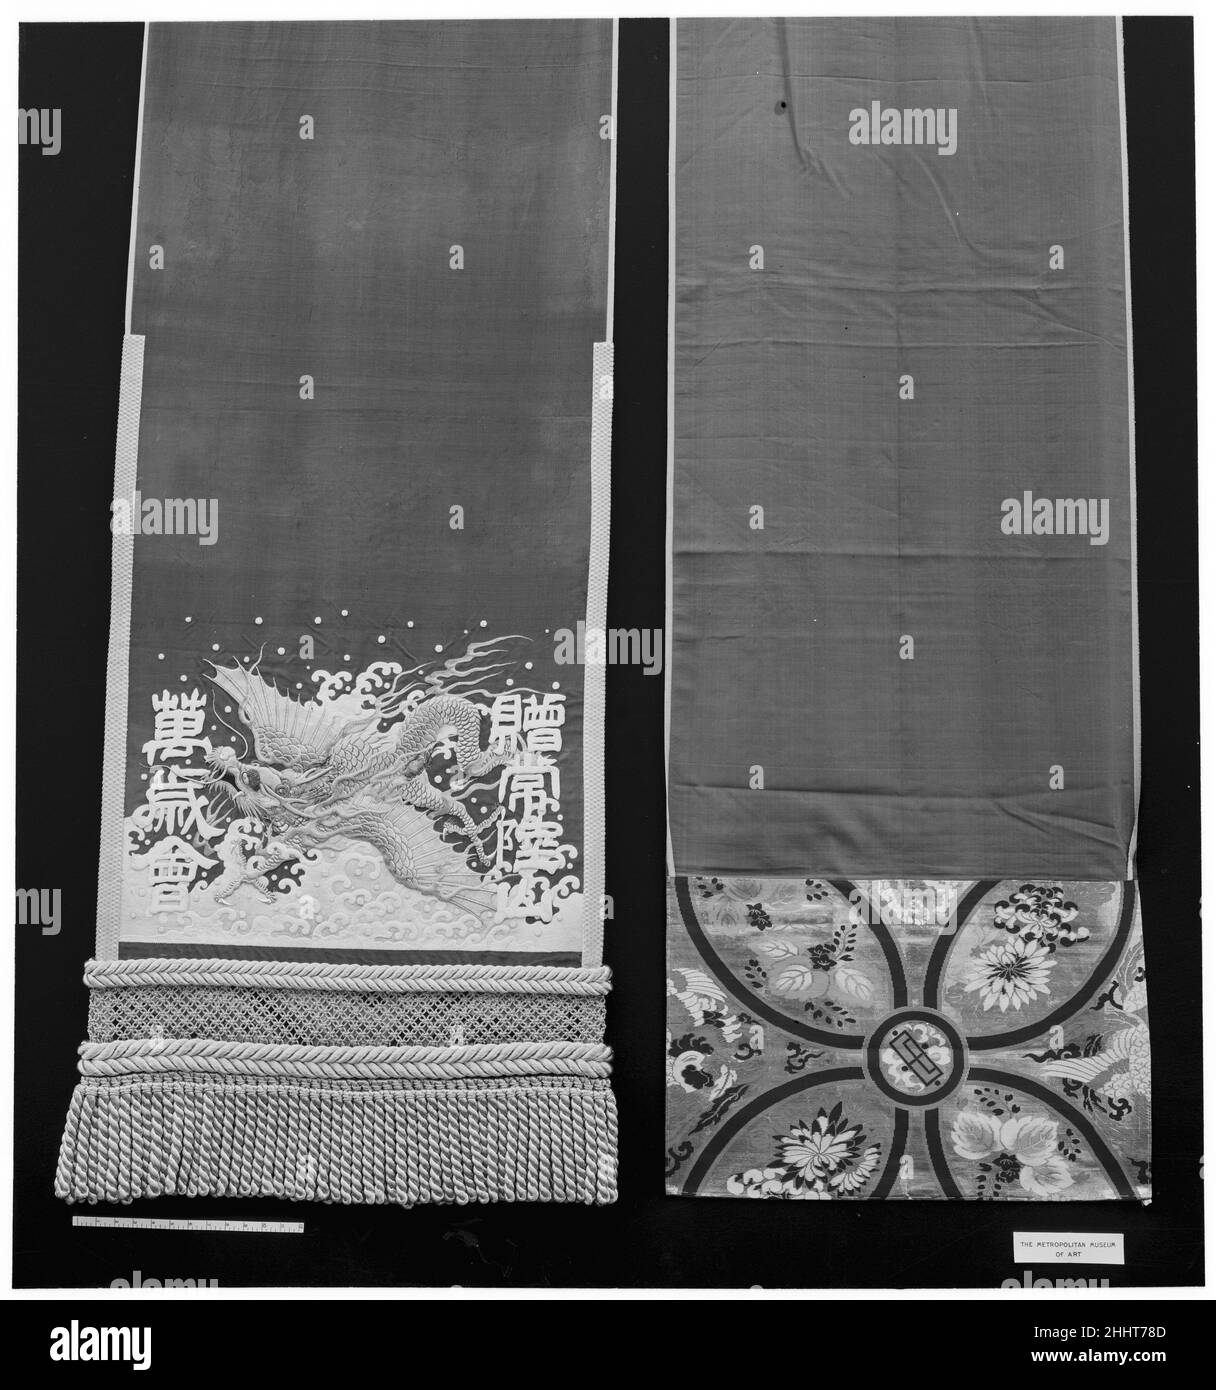 Costume de lutte 19th siècle Japon.Costume de lutte.Japon.19th siècle.Soie ; or / broderie.Textiles-costumes Banque D'Images